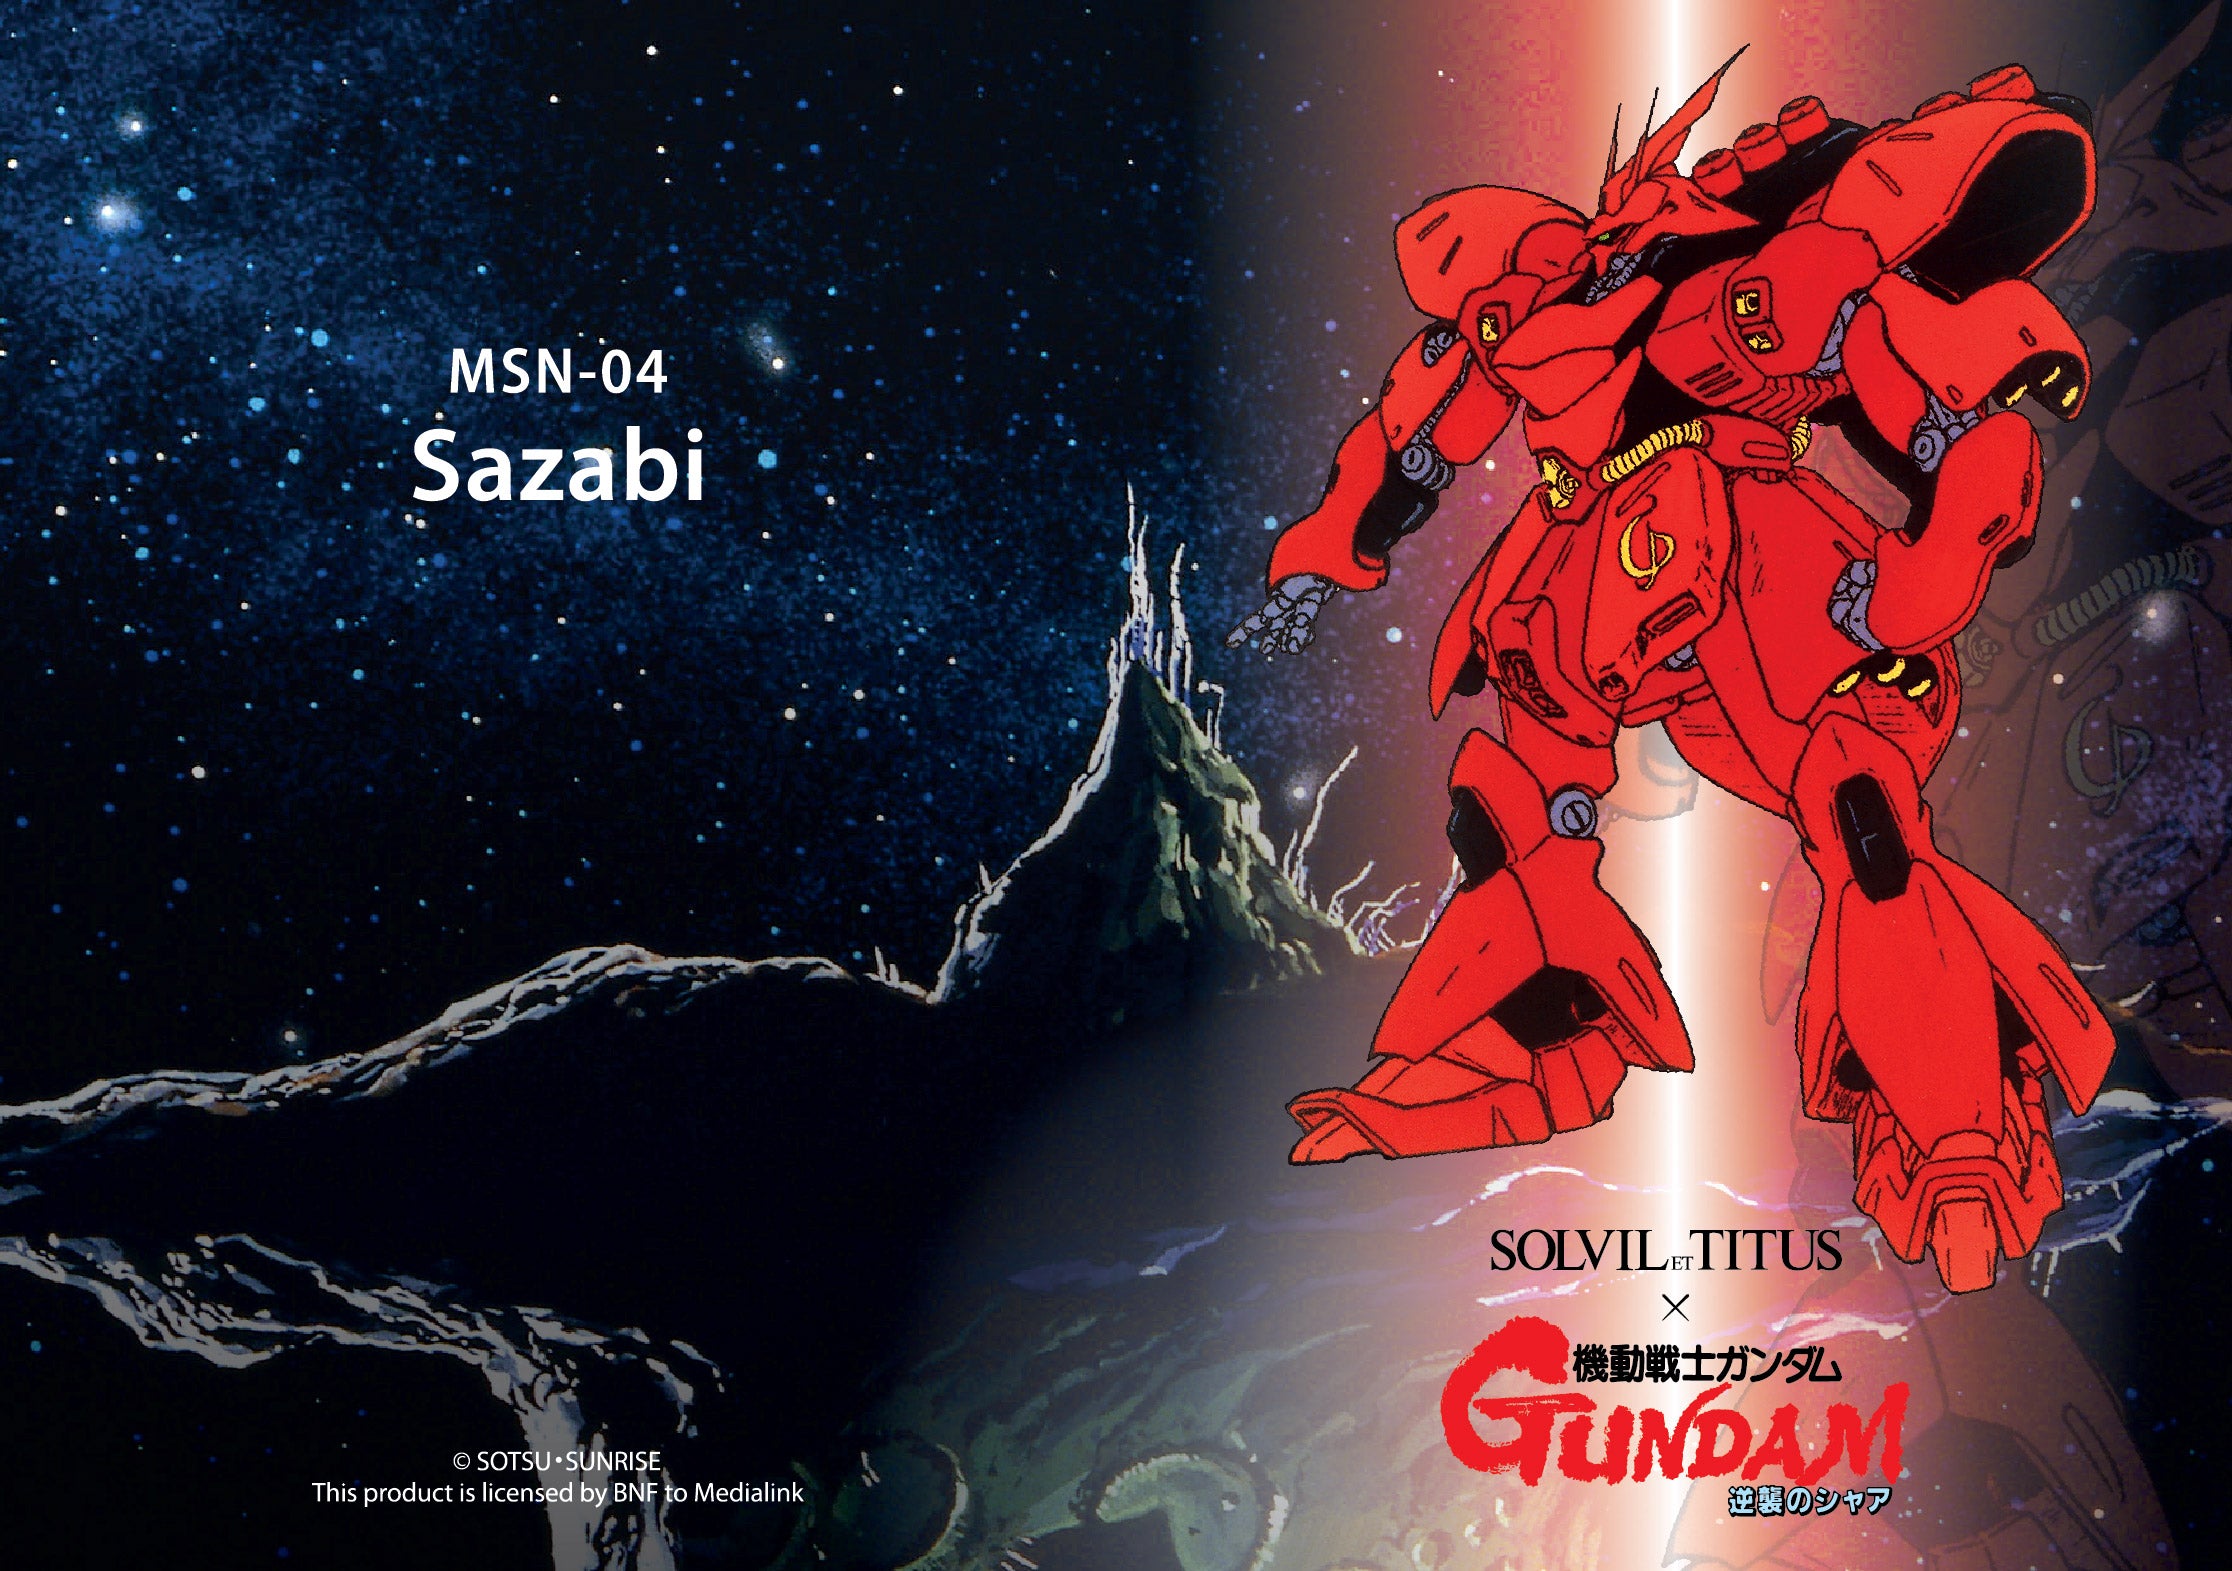 Solvil et Titus x Mobile Suit Gundam 'Sazabi' Limited Edition Saber Chronograph Quartz Stainless Steel Men Watch W06-03329-001